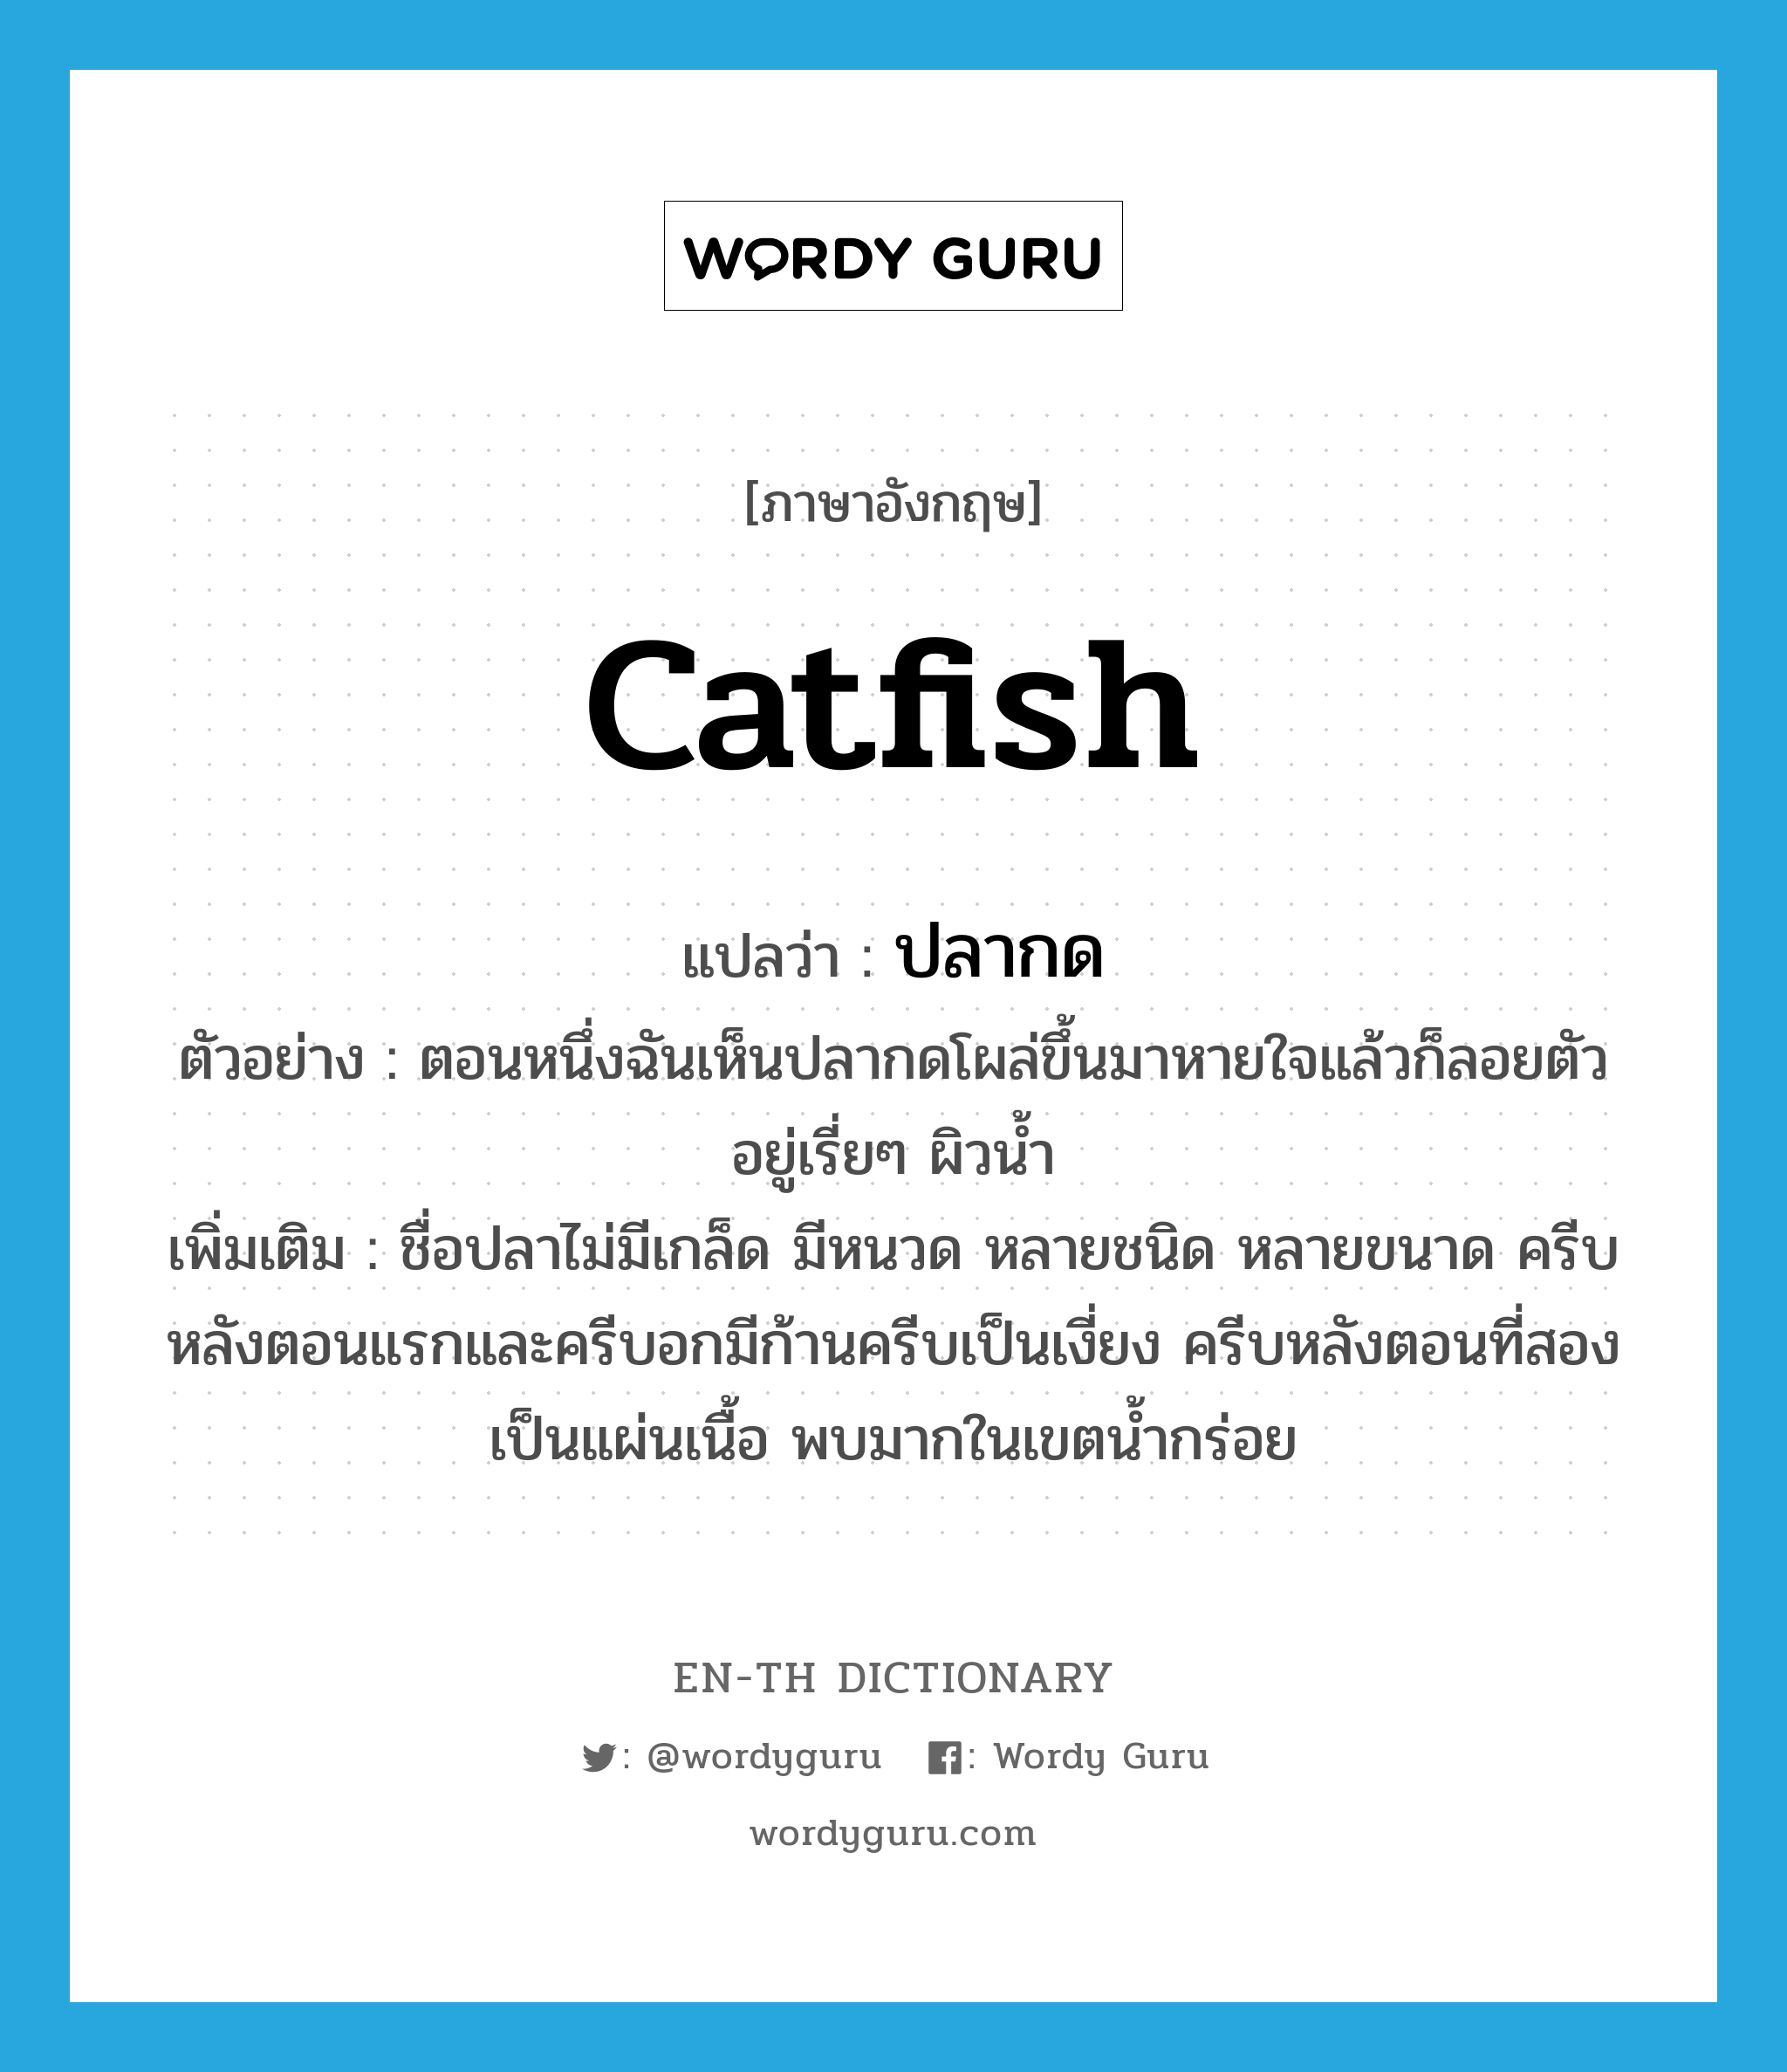 catfish แปลว่า?, คำศัพท์ภาษาอังกฤษ catfish แปลว่า ปลากด ประเภท N ตัวอย่าง ตอนหนึ่งฉันเห็นปลากดโผล่ขึ้นมาหายใจแล้วก็ลอยตัวอยู่เรี่ยๆ ผิวน้ำ เพิ่มเติม ชื่อปลาไม่มีเกล็ด มีหนวด หลายชนิด หลายขนาด ครีบหลังตอนแรกและครีบอกมีก้านครีบเป็นเงี่ยง ครีบหลังตอนที่สองเป็นแผ่นเนื้อ พบมากในเขตน้ำกร่อย หมวด N